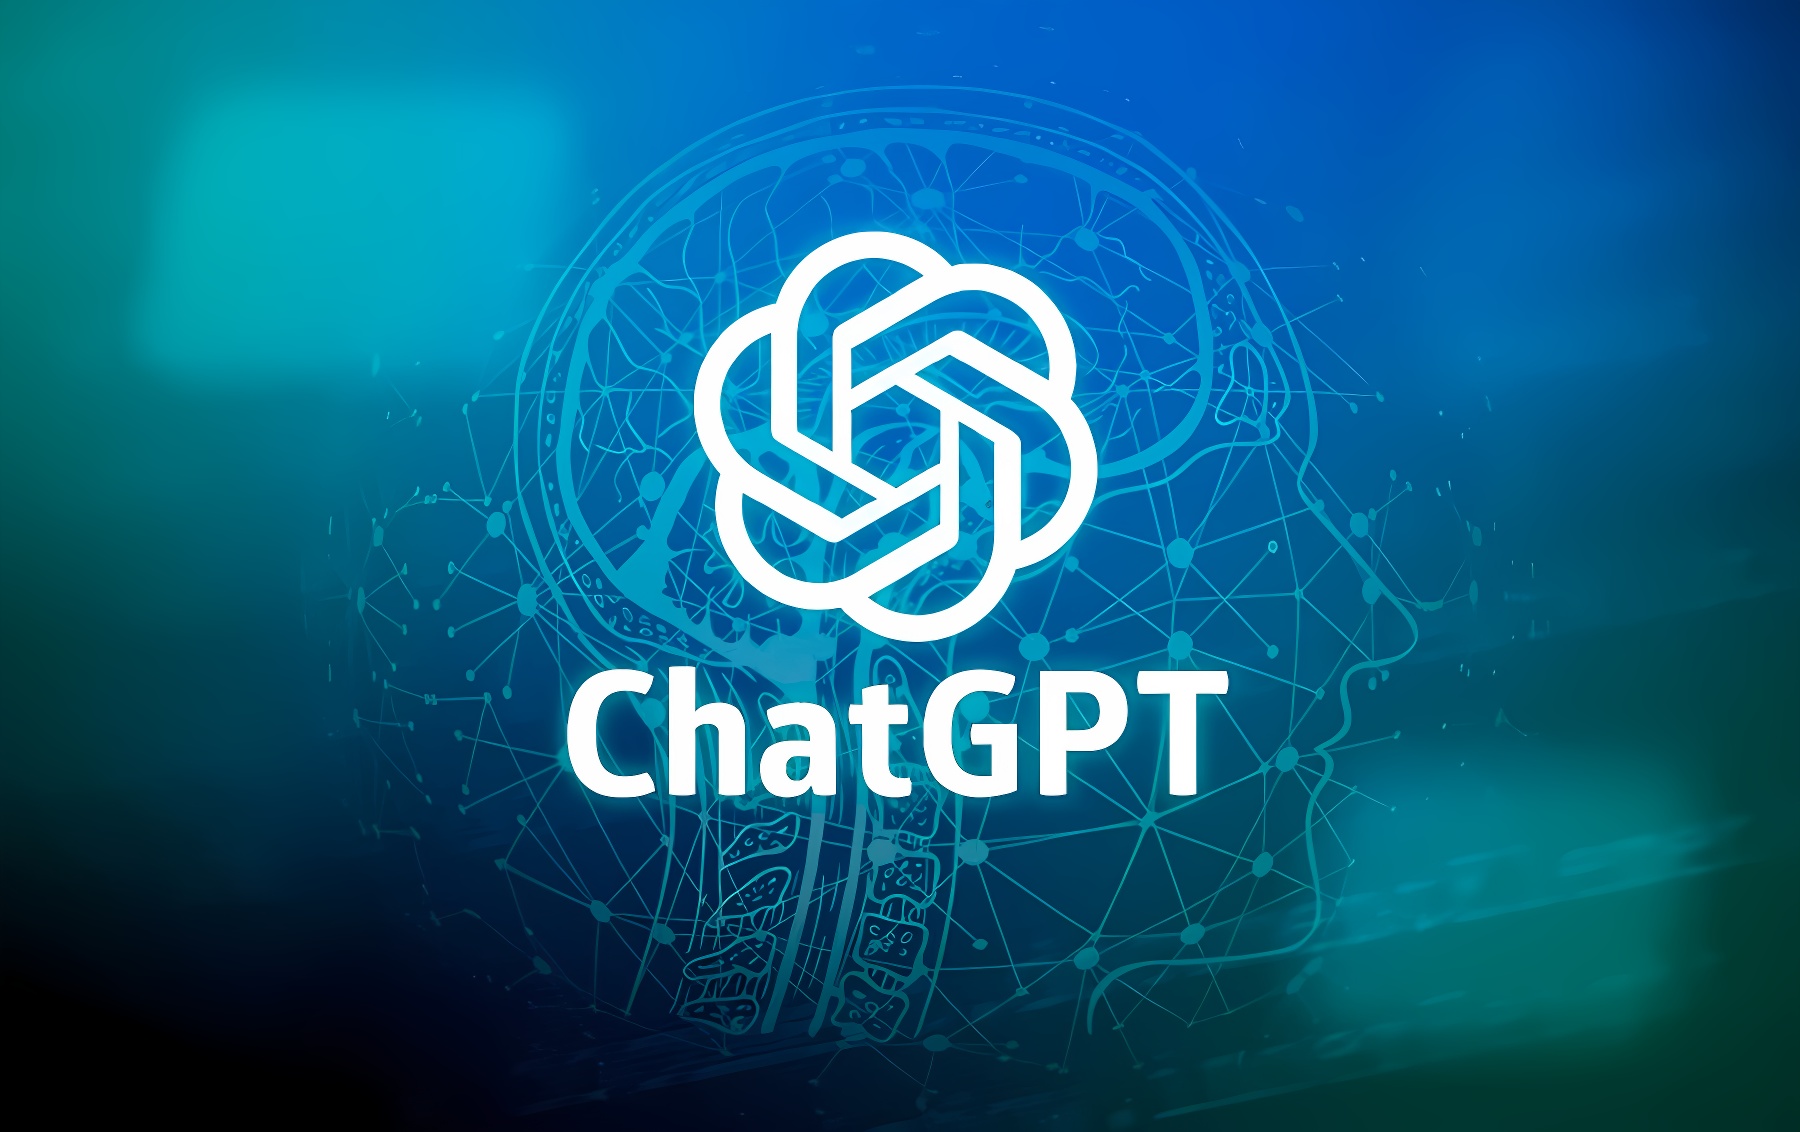 这张图片展示了一个蓝色背景上的ChatGPT标志，标志中心是一个白色的几何图形，周围有网络和代码元素。